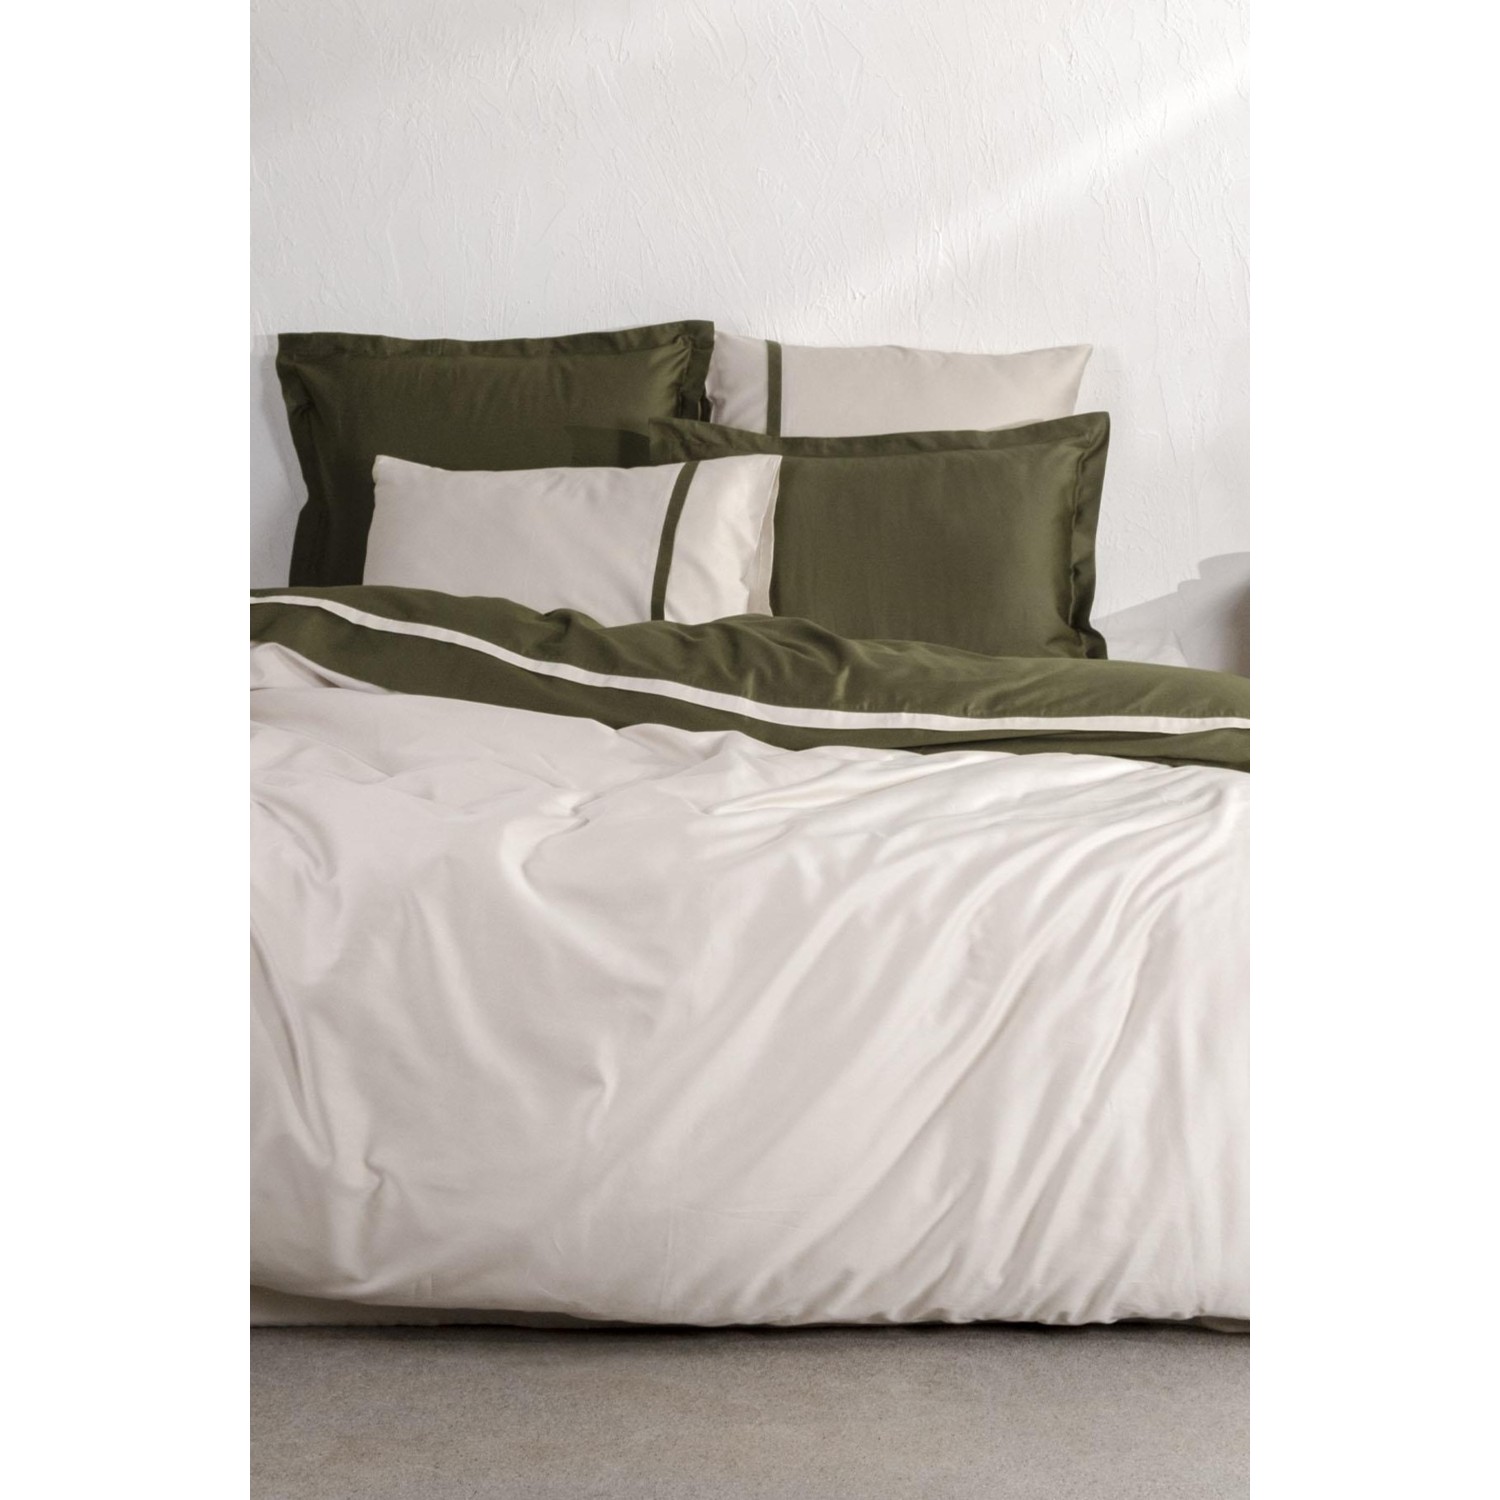 цена Экокотон, новый базовый Комплект постельного белья королевского размера, 100% органический хлопок, атлас, зеленый, 240X220 см